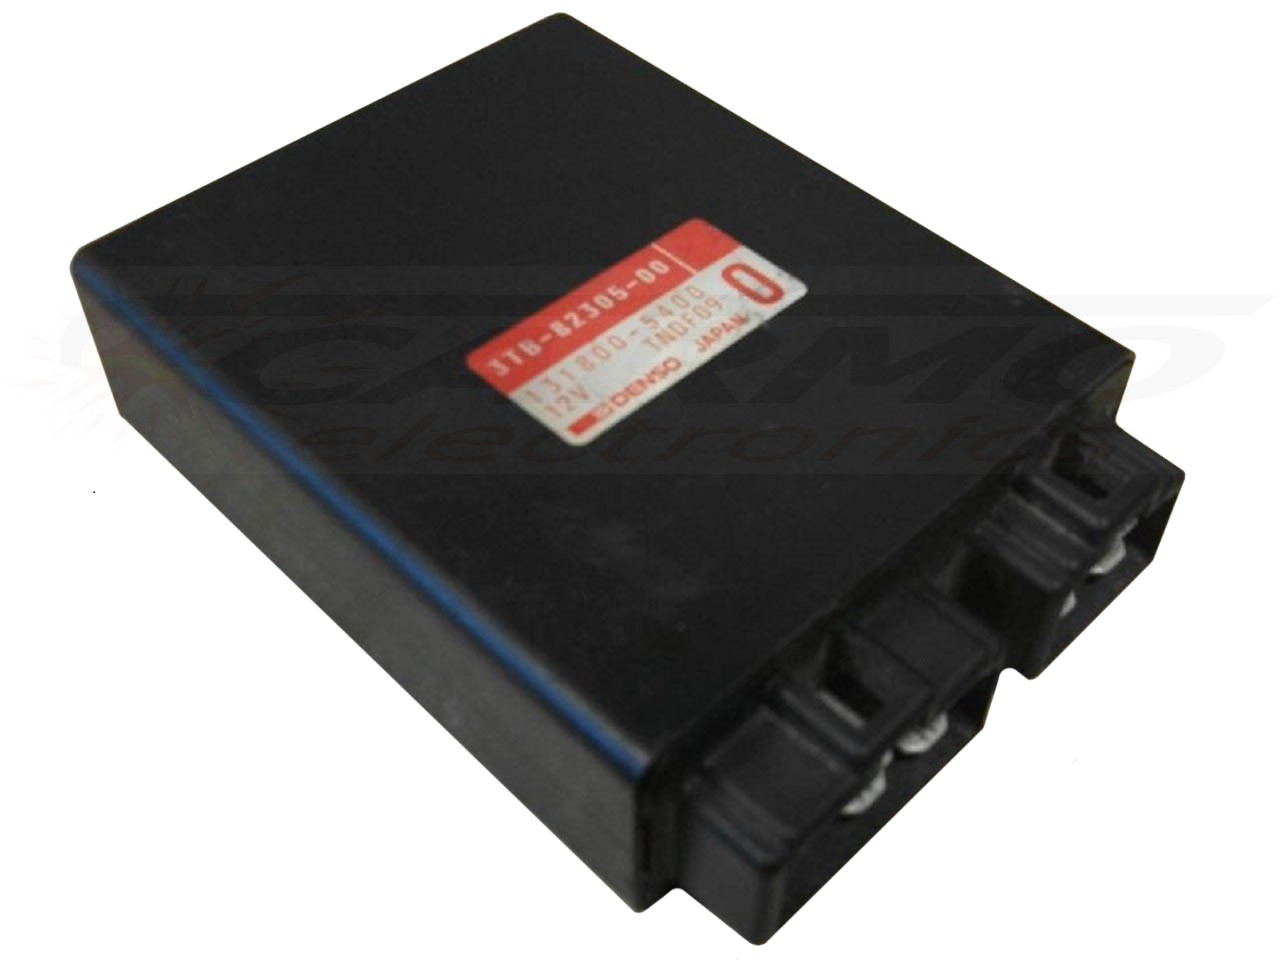 XT600 SRX400 TCI CDI dispositif de commande boîte noire (3TB-82305-00; 3VN-82305-00)